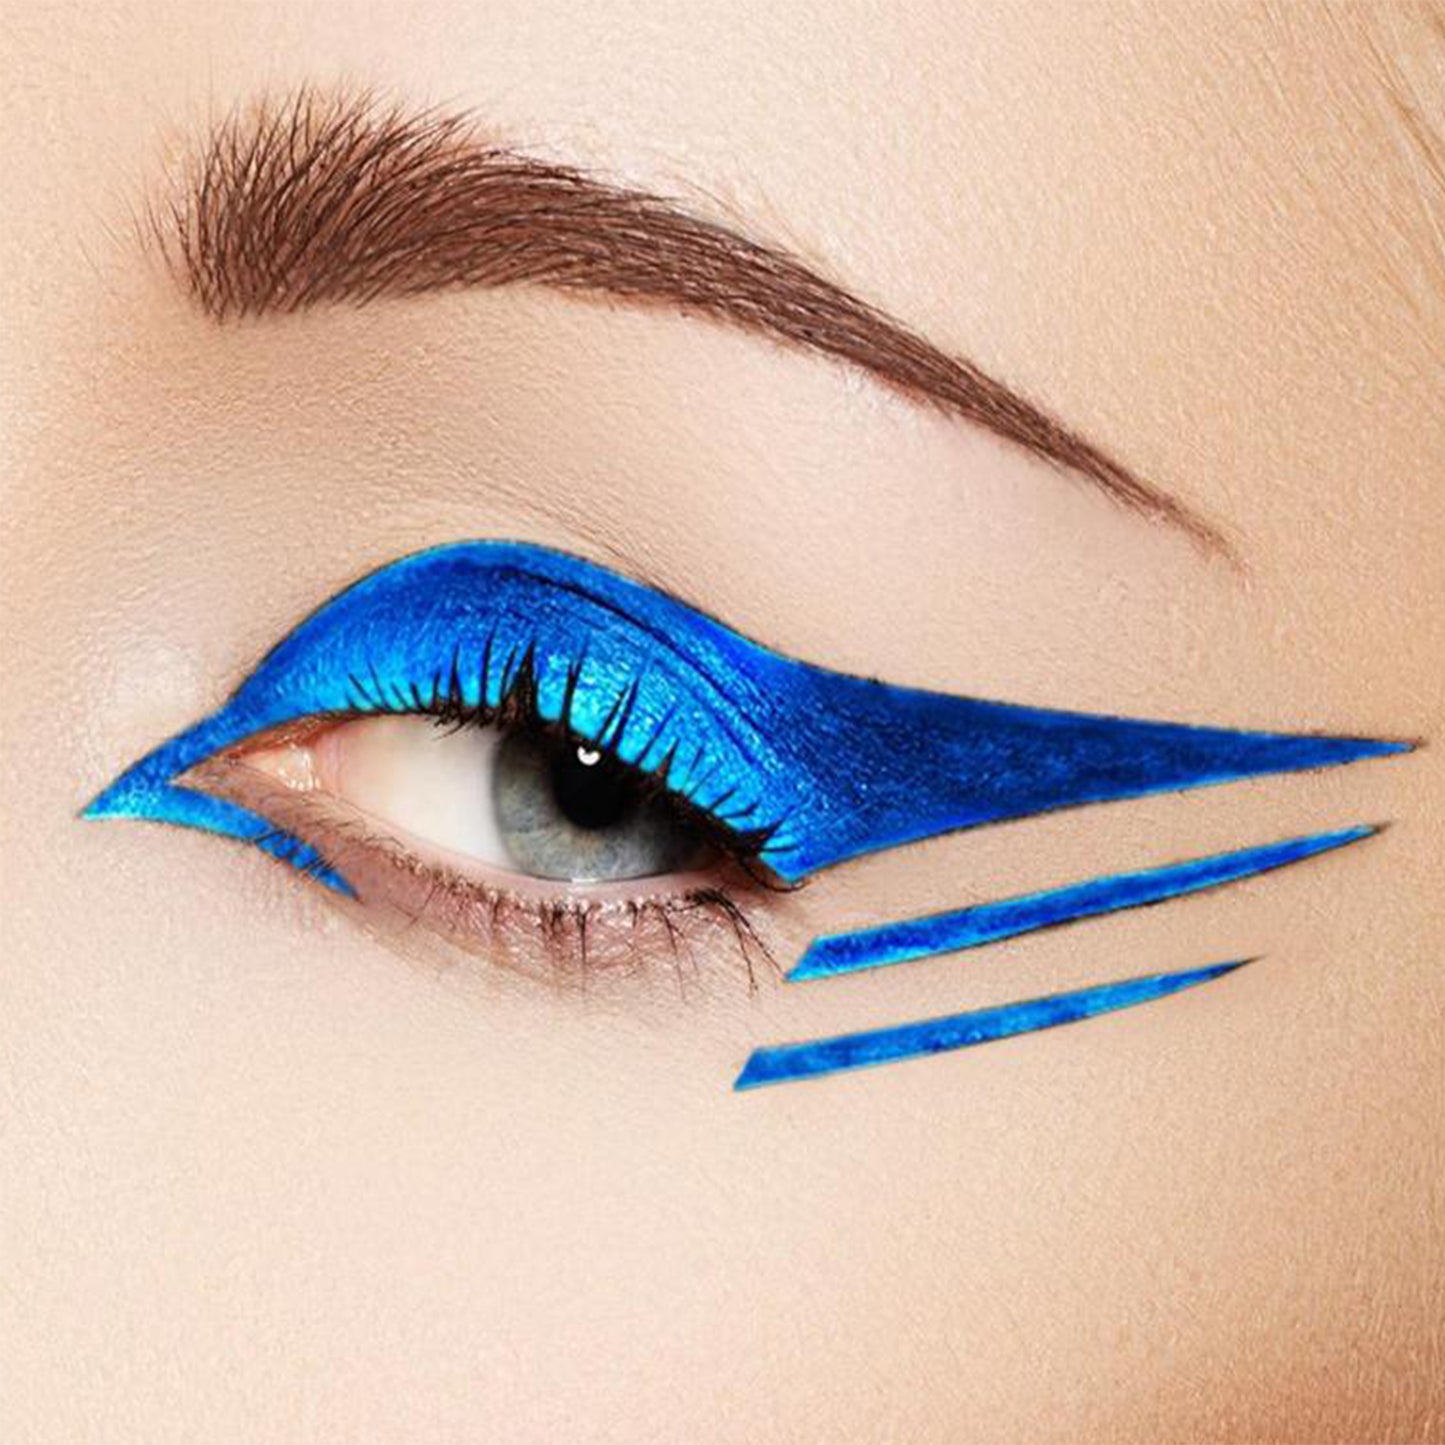 Krayons Insta Dri Sparkling Eyeliner, Brown, Blue, Waterproof, Longlasting, 7ml Each, Combo (Pack of 2)